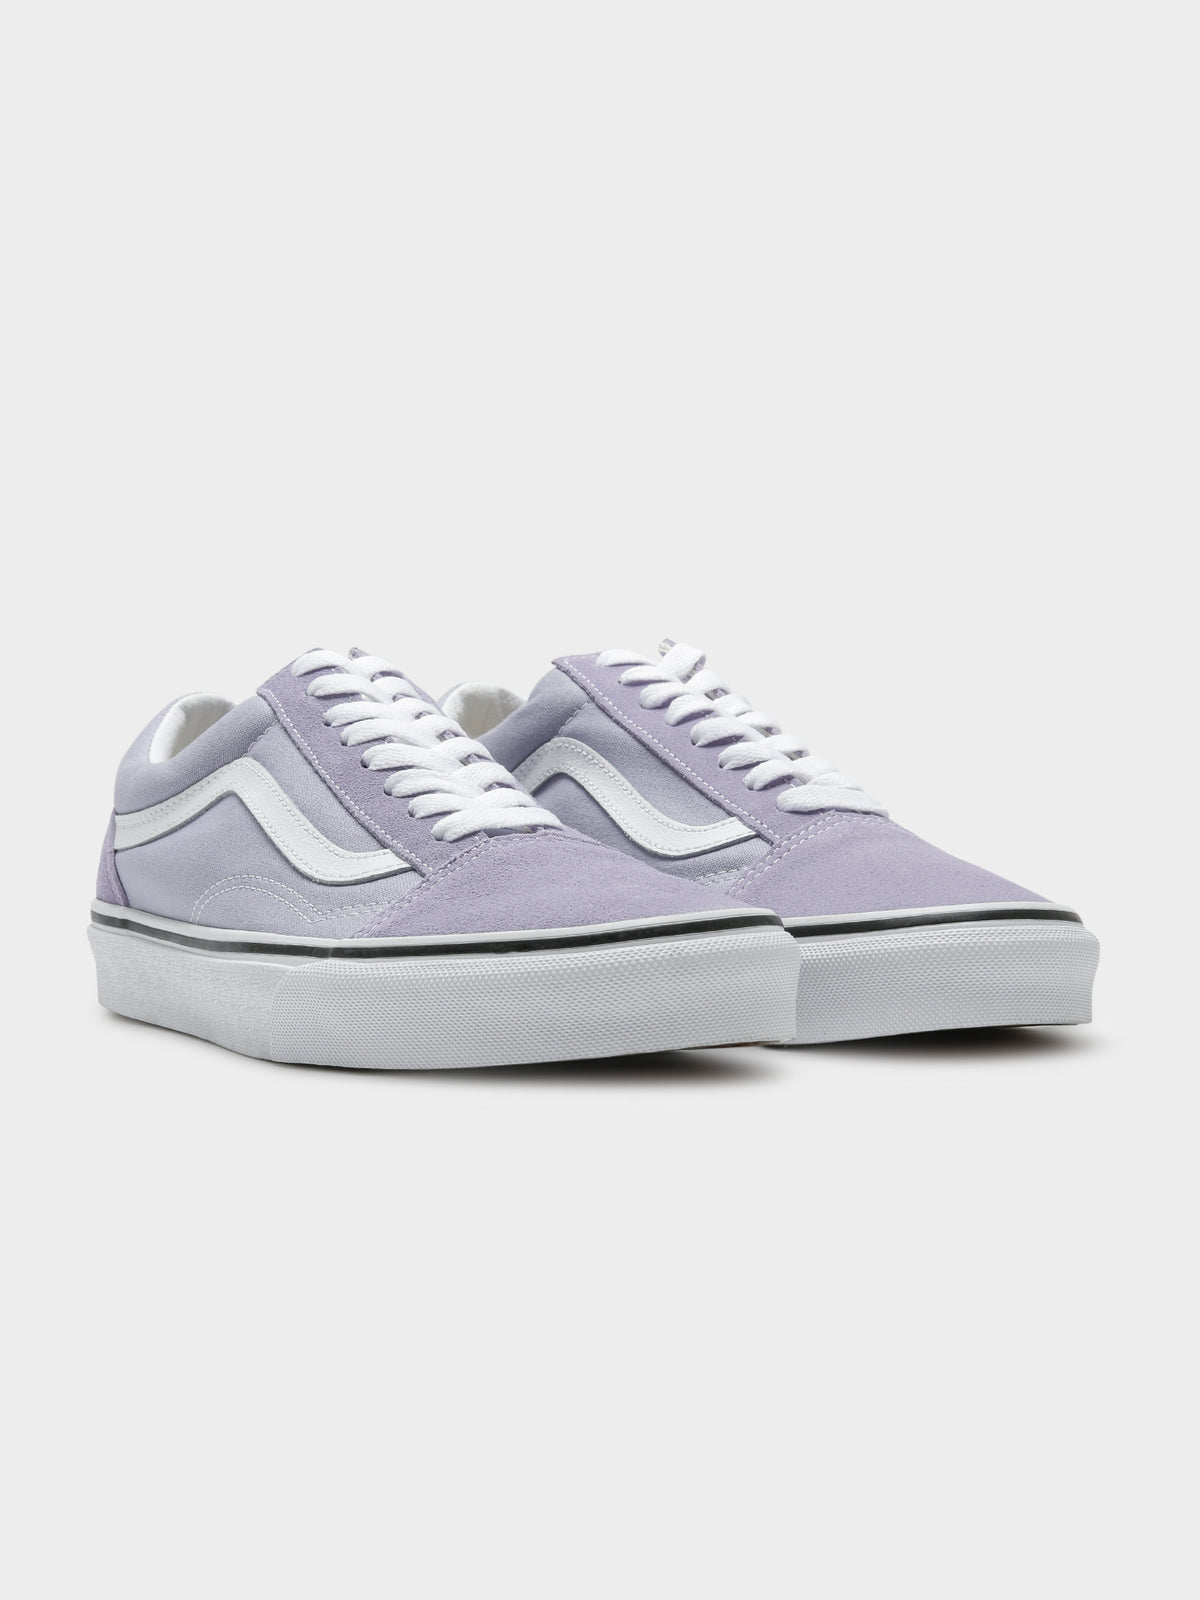 Unisex Old Skool Sneakers in Languid Lavender